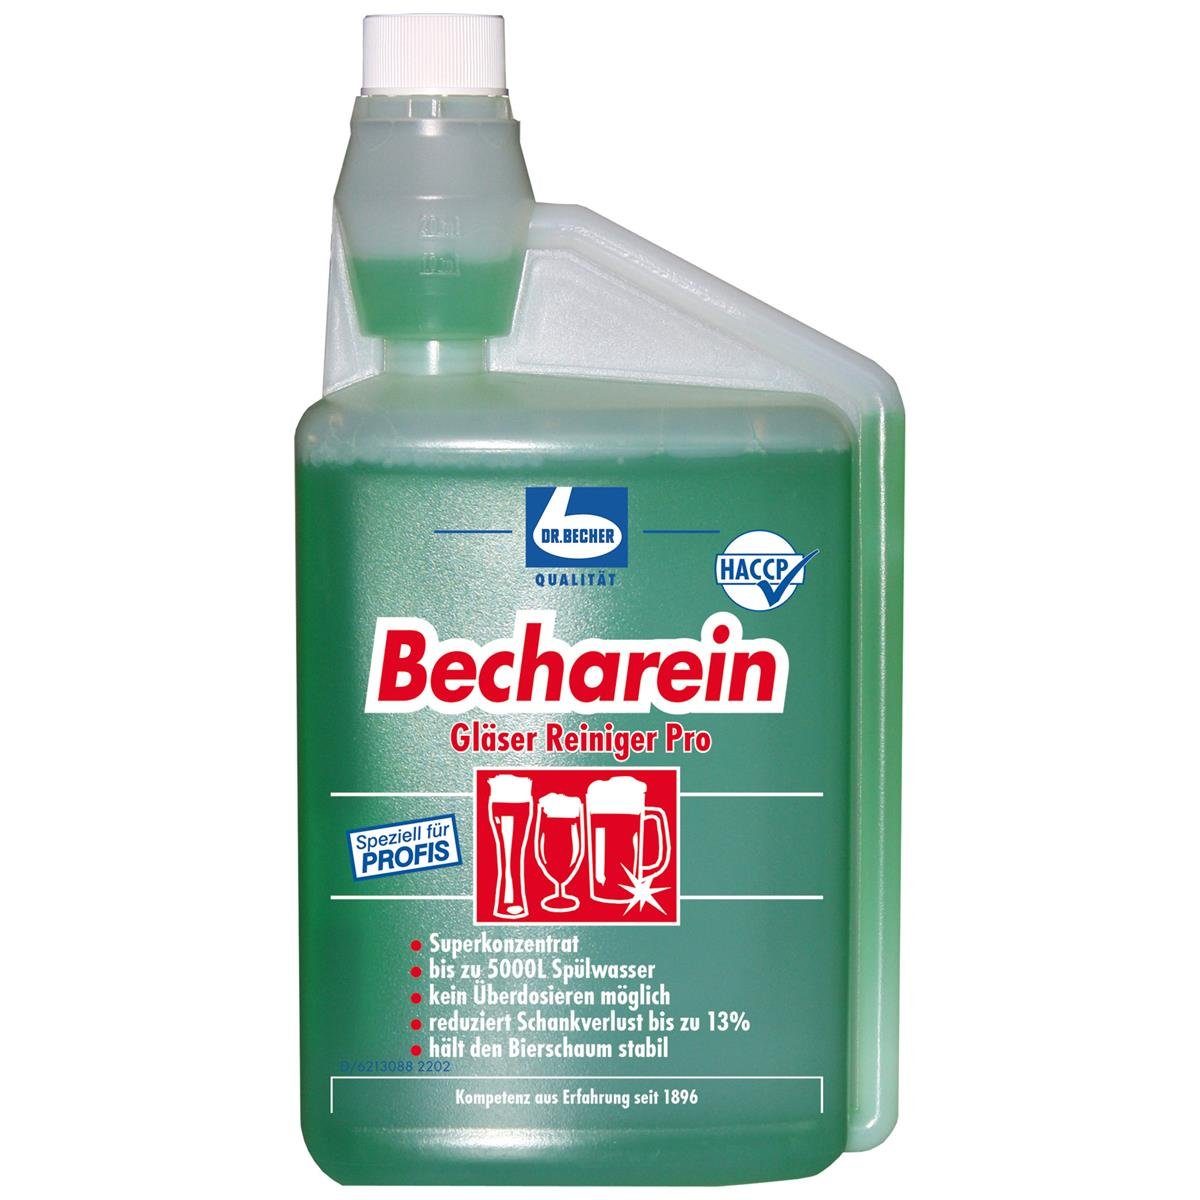 Dr. Becher Dr. Becher Becharein Gläser Reiniger Dosierkammerflasche 1 Liter Glasreiniger